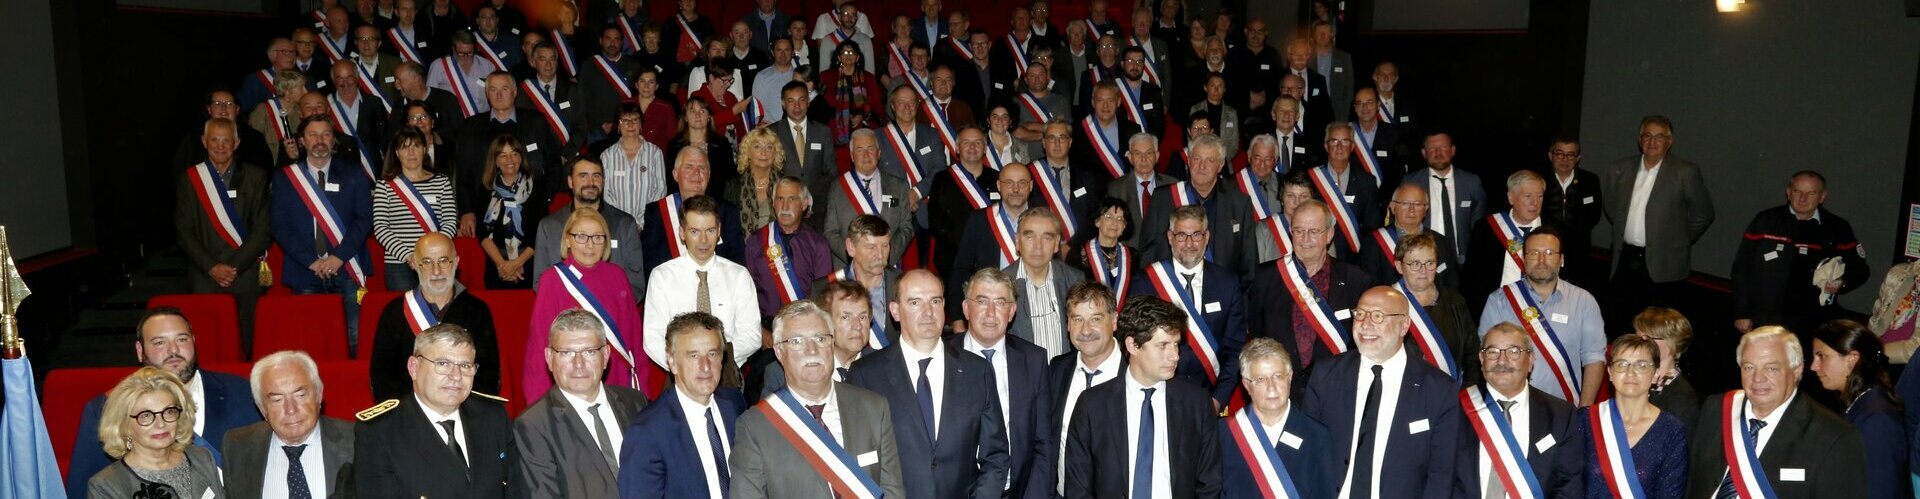 Association des maires du Cantal - AMf15